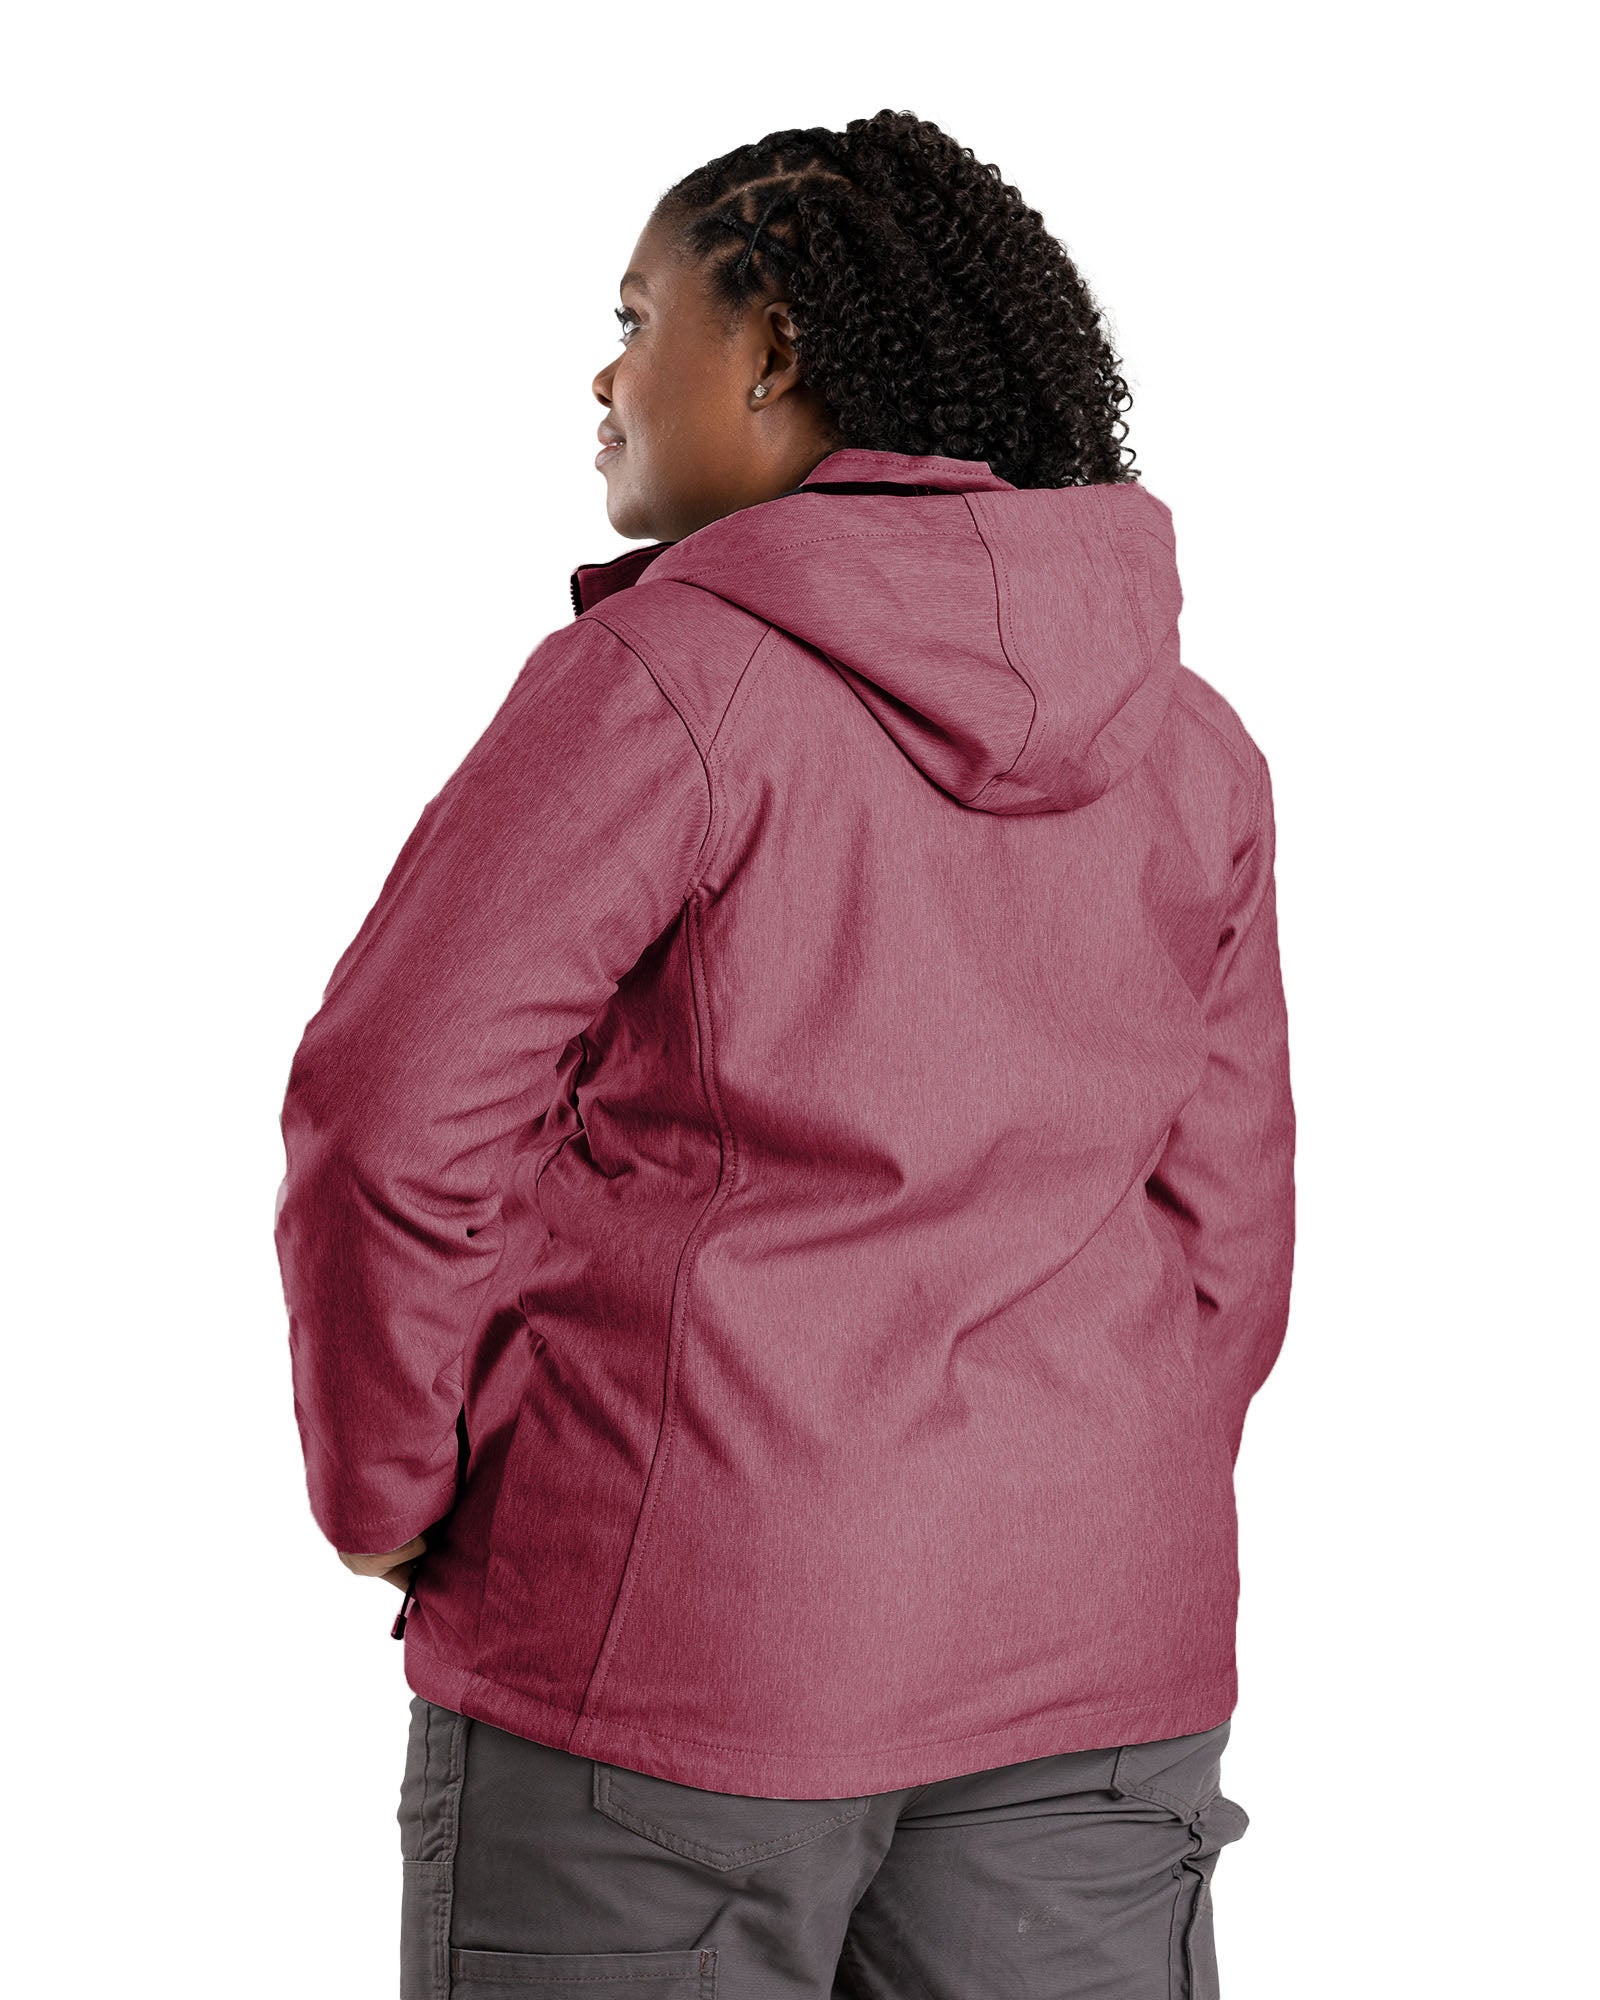 WJS301MN Women's Hooded Softshell Jacket